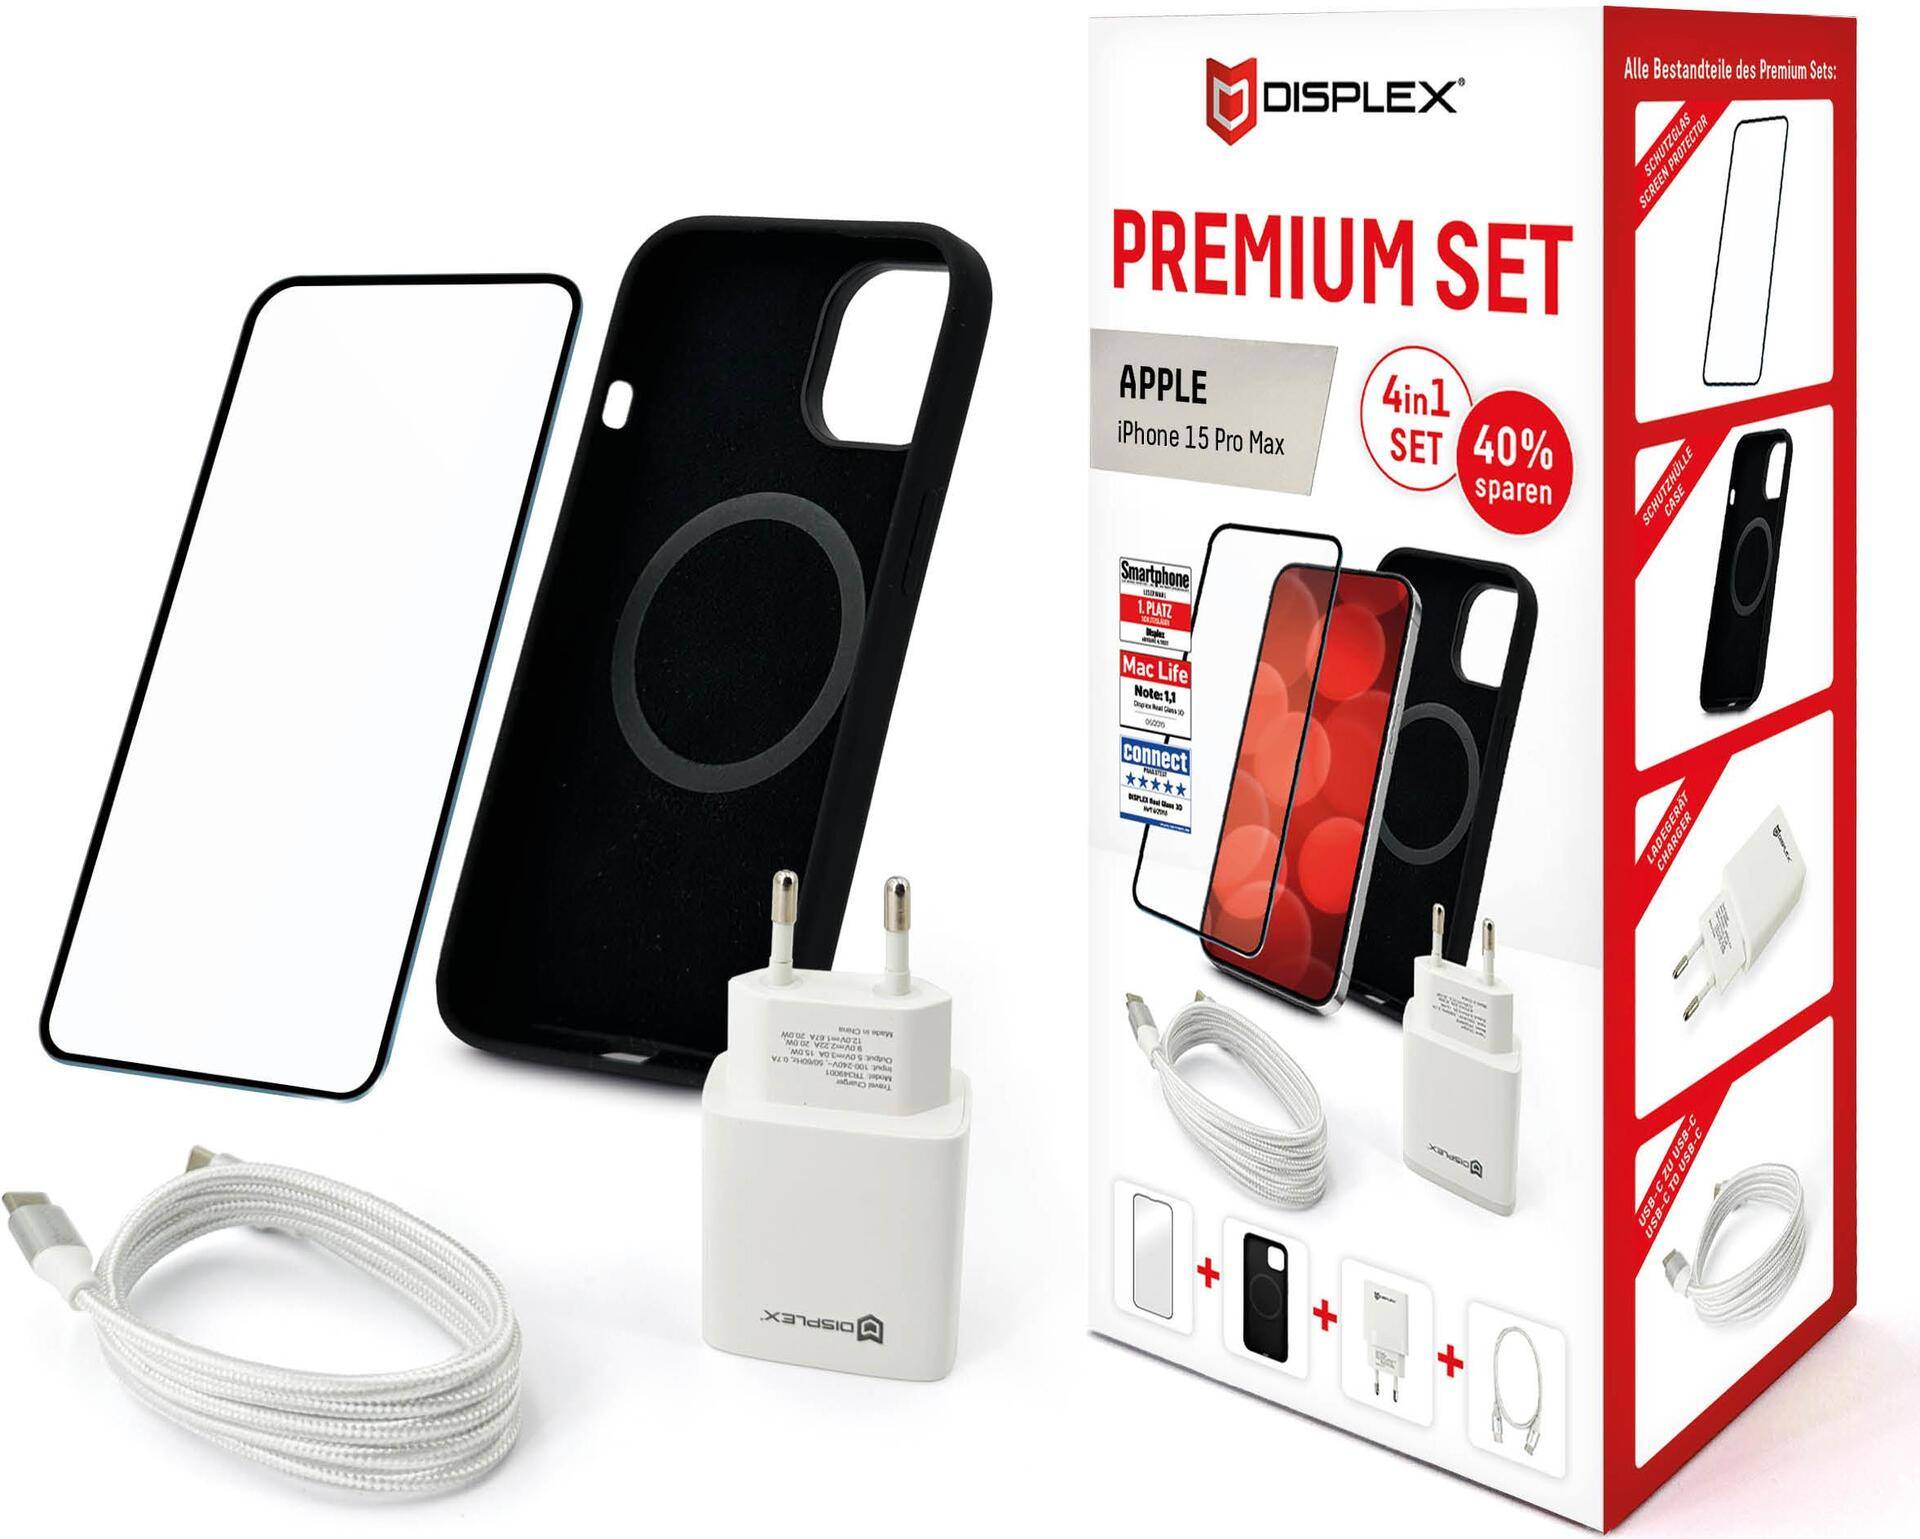 Displex Premium 4 in 1 Set für Apple iPhone 15 Pro Max - Transparent - Schwarz - Weiß - 244 g - 70 mm - 95 mm - 200 mm - USB Typ-C auf USB Typ-C (01871) von E.V.I.